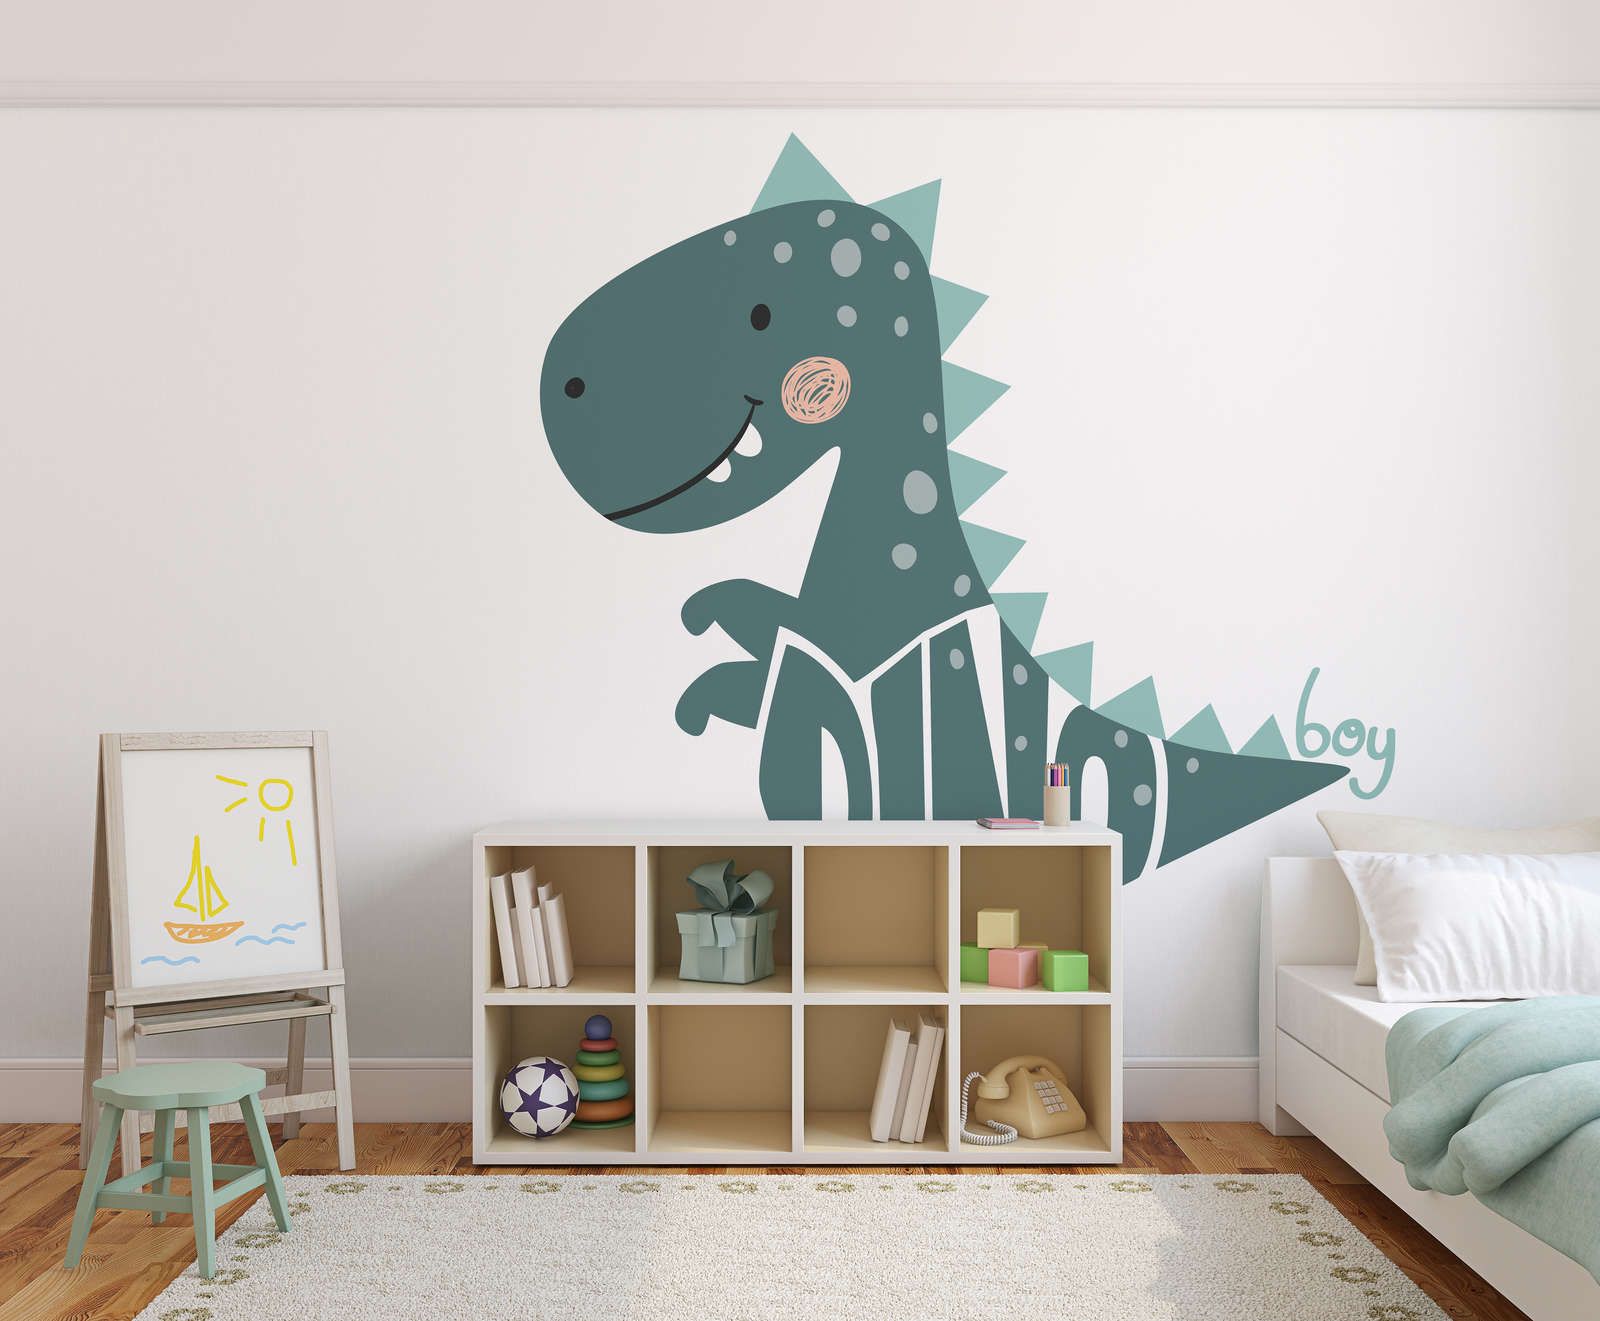             Digital behang voor de kinderkamer met dinosaurus - Glad & licht glanzend vlies
        